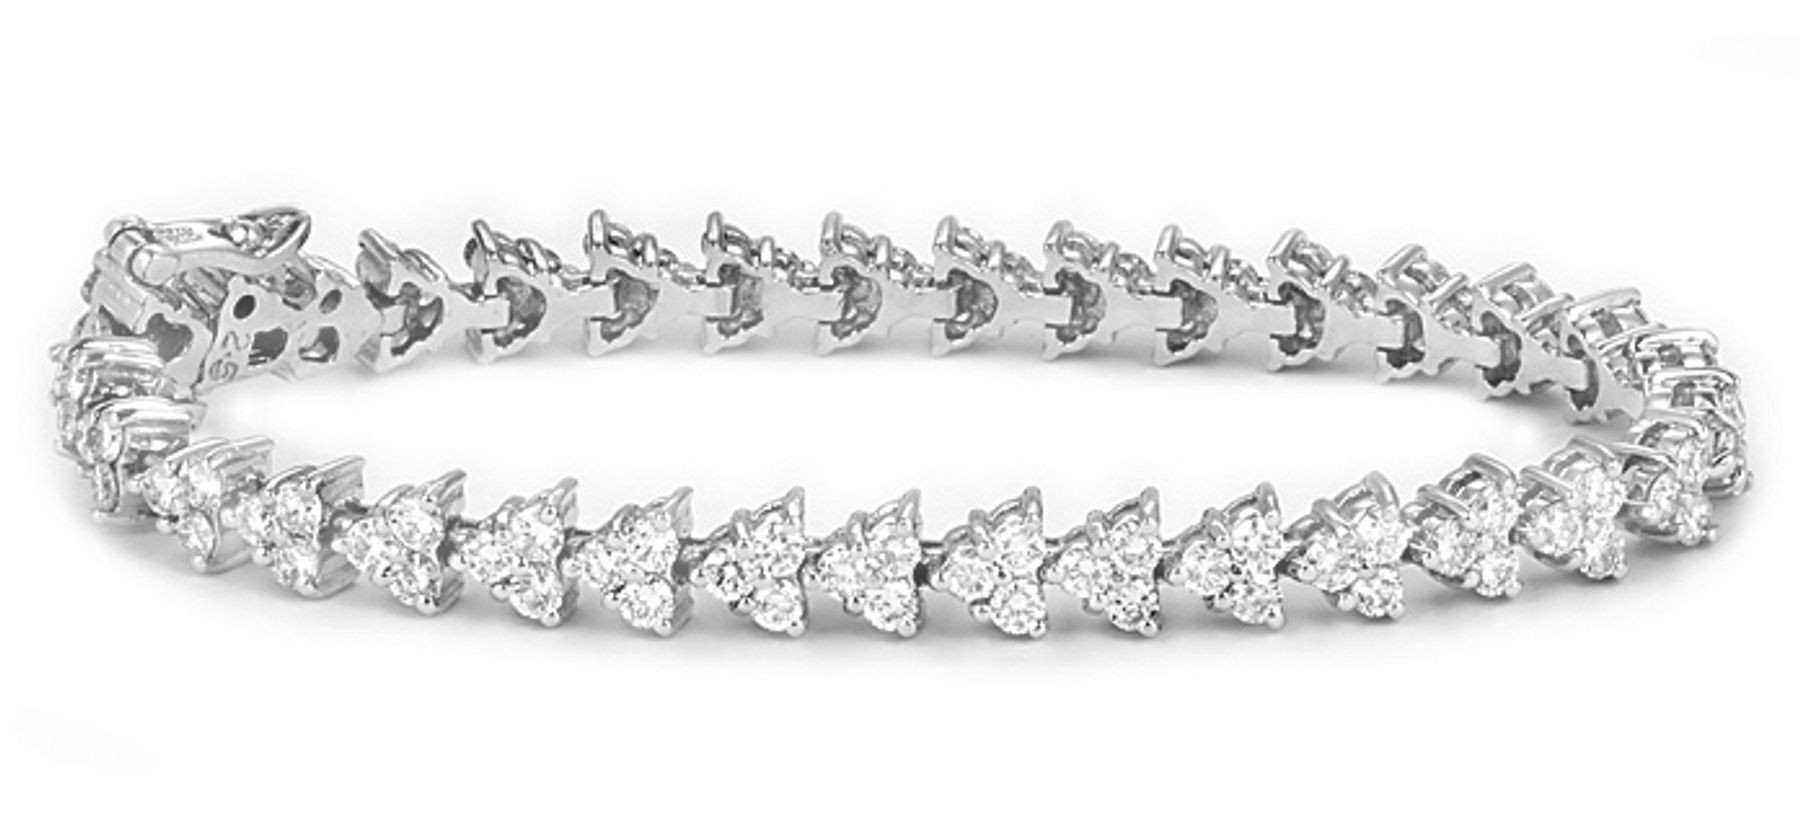 View Diamond Bracelets 14K White Gold